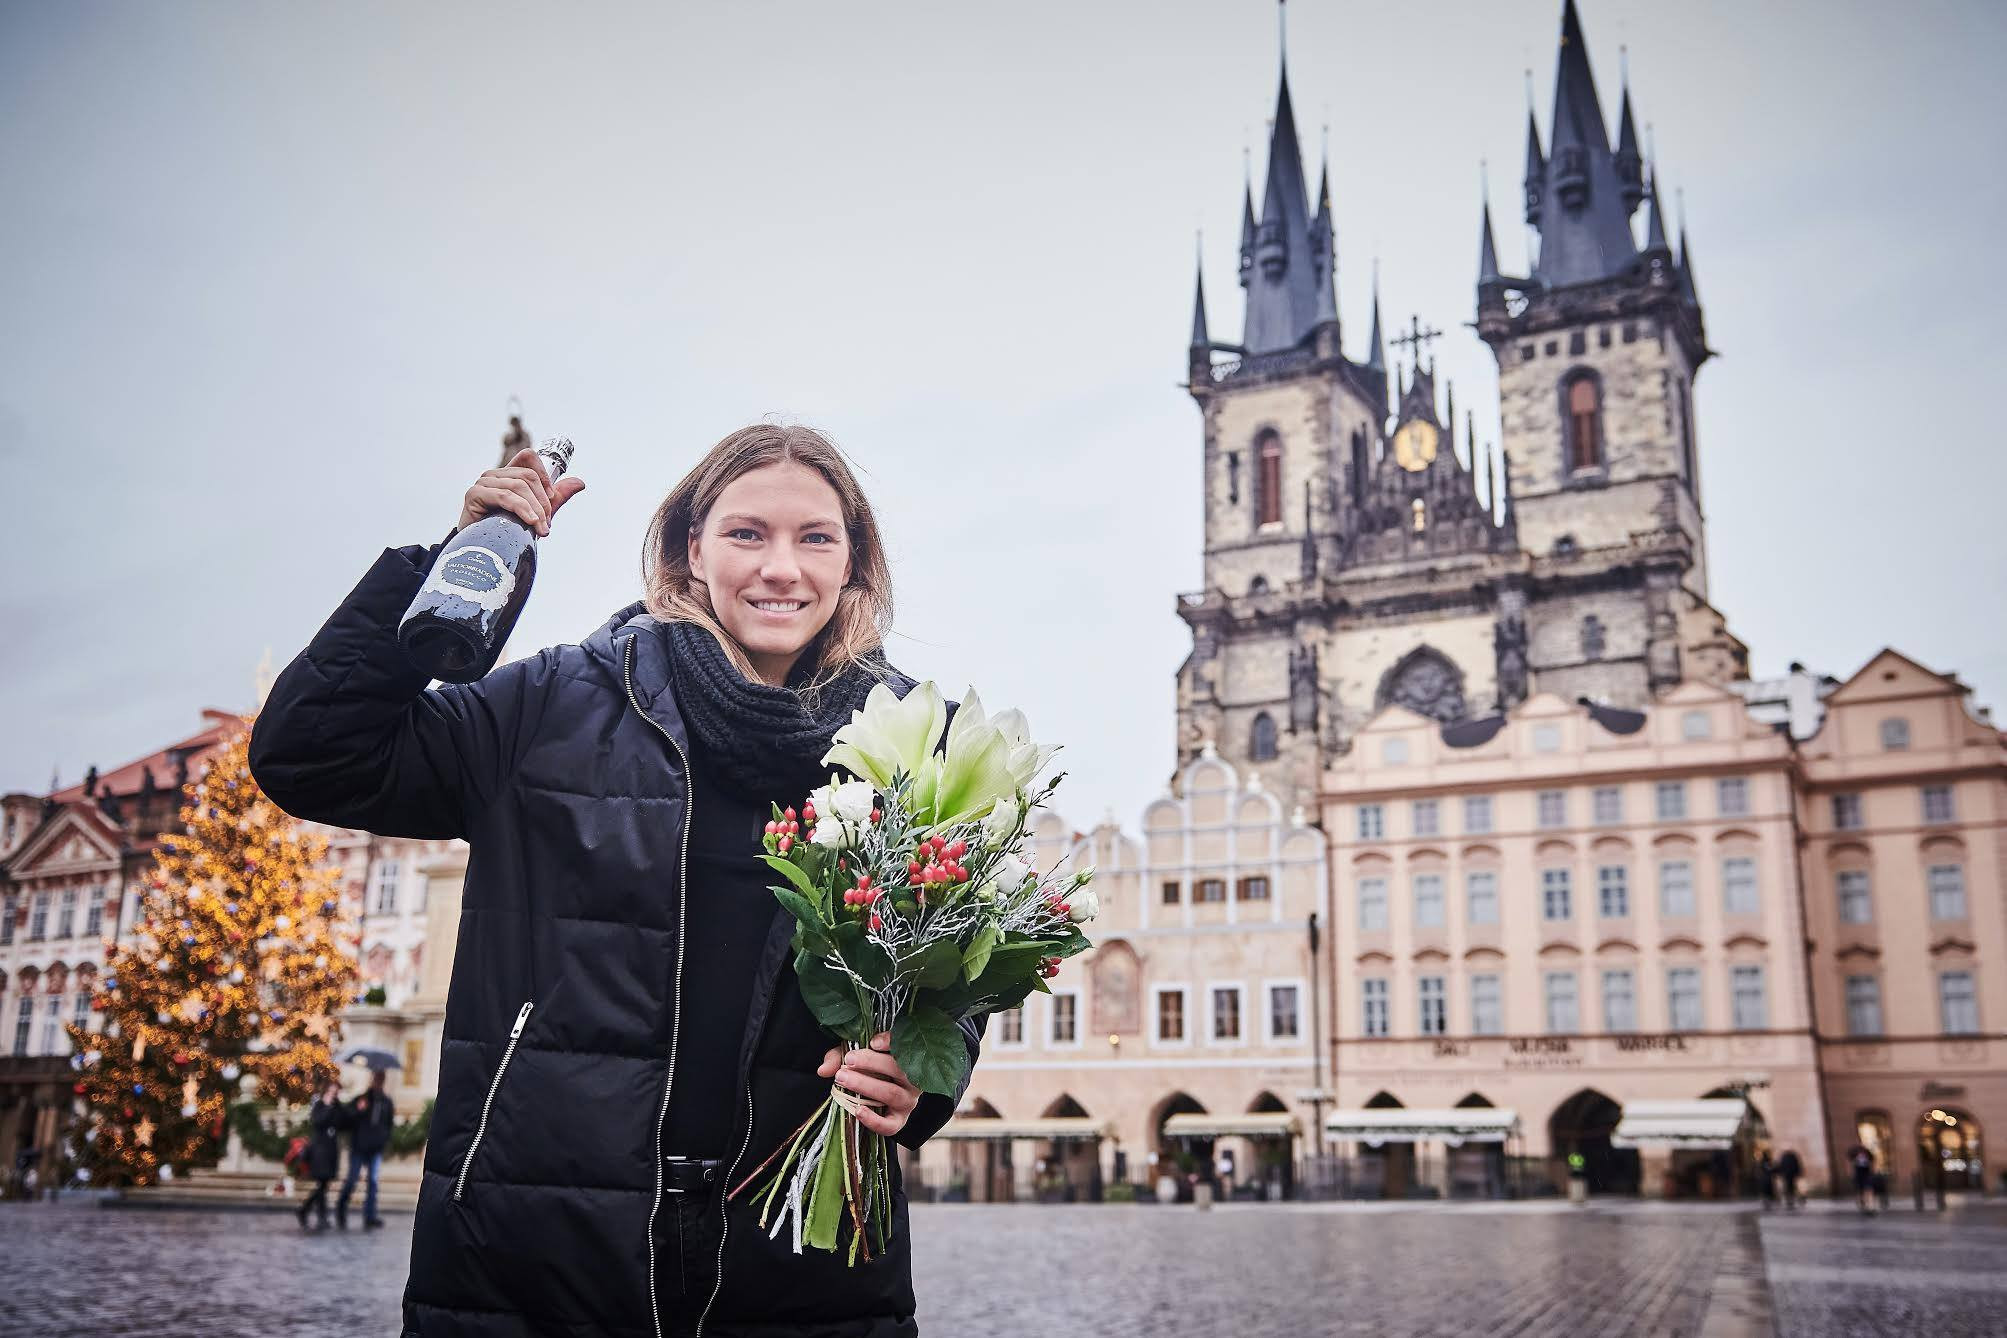 Krupnová named world's best floorball player for 2020